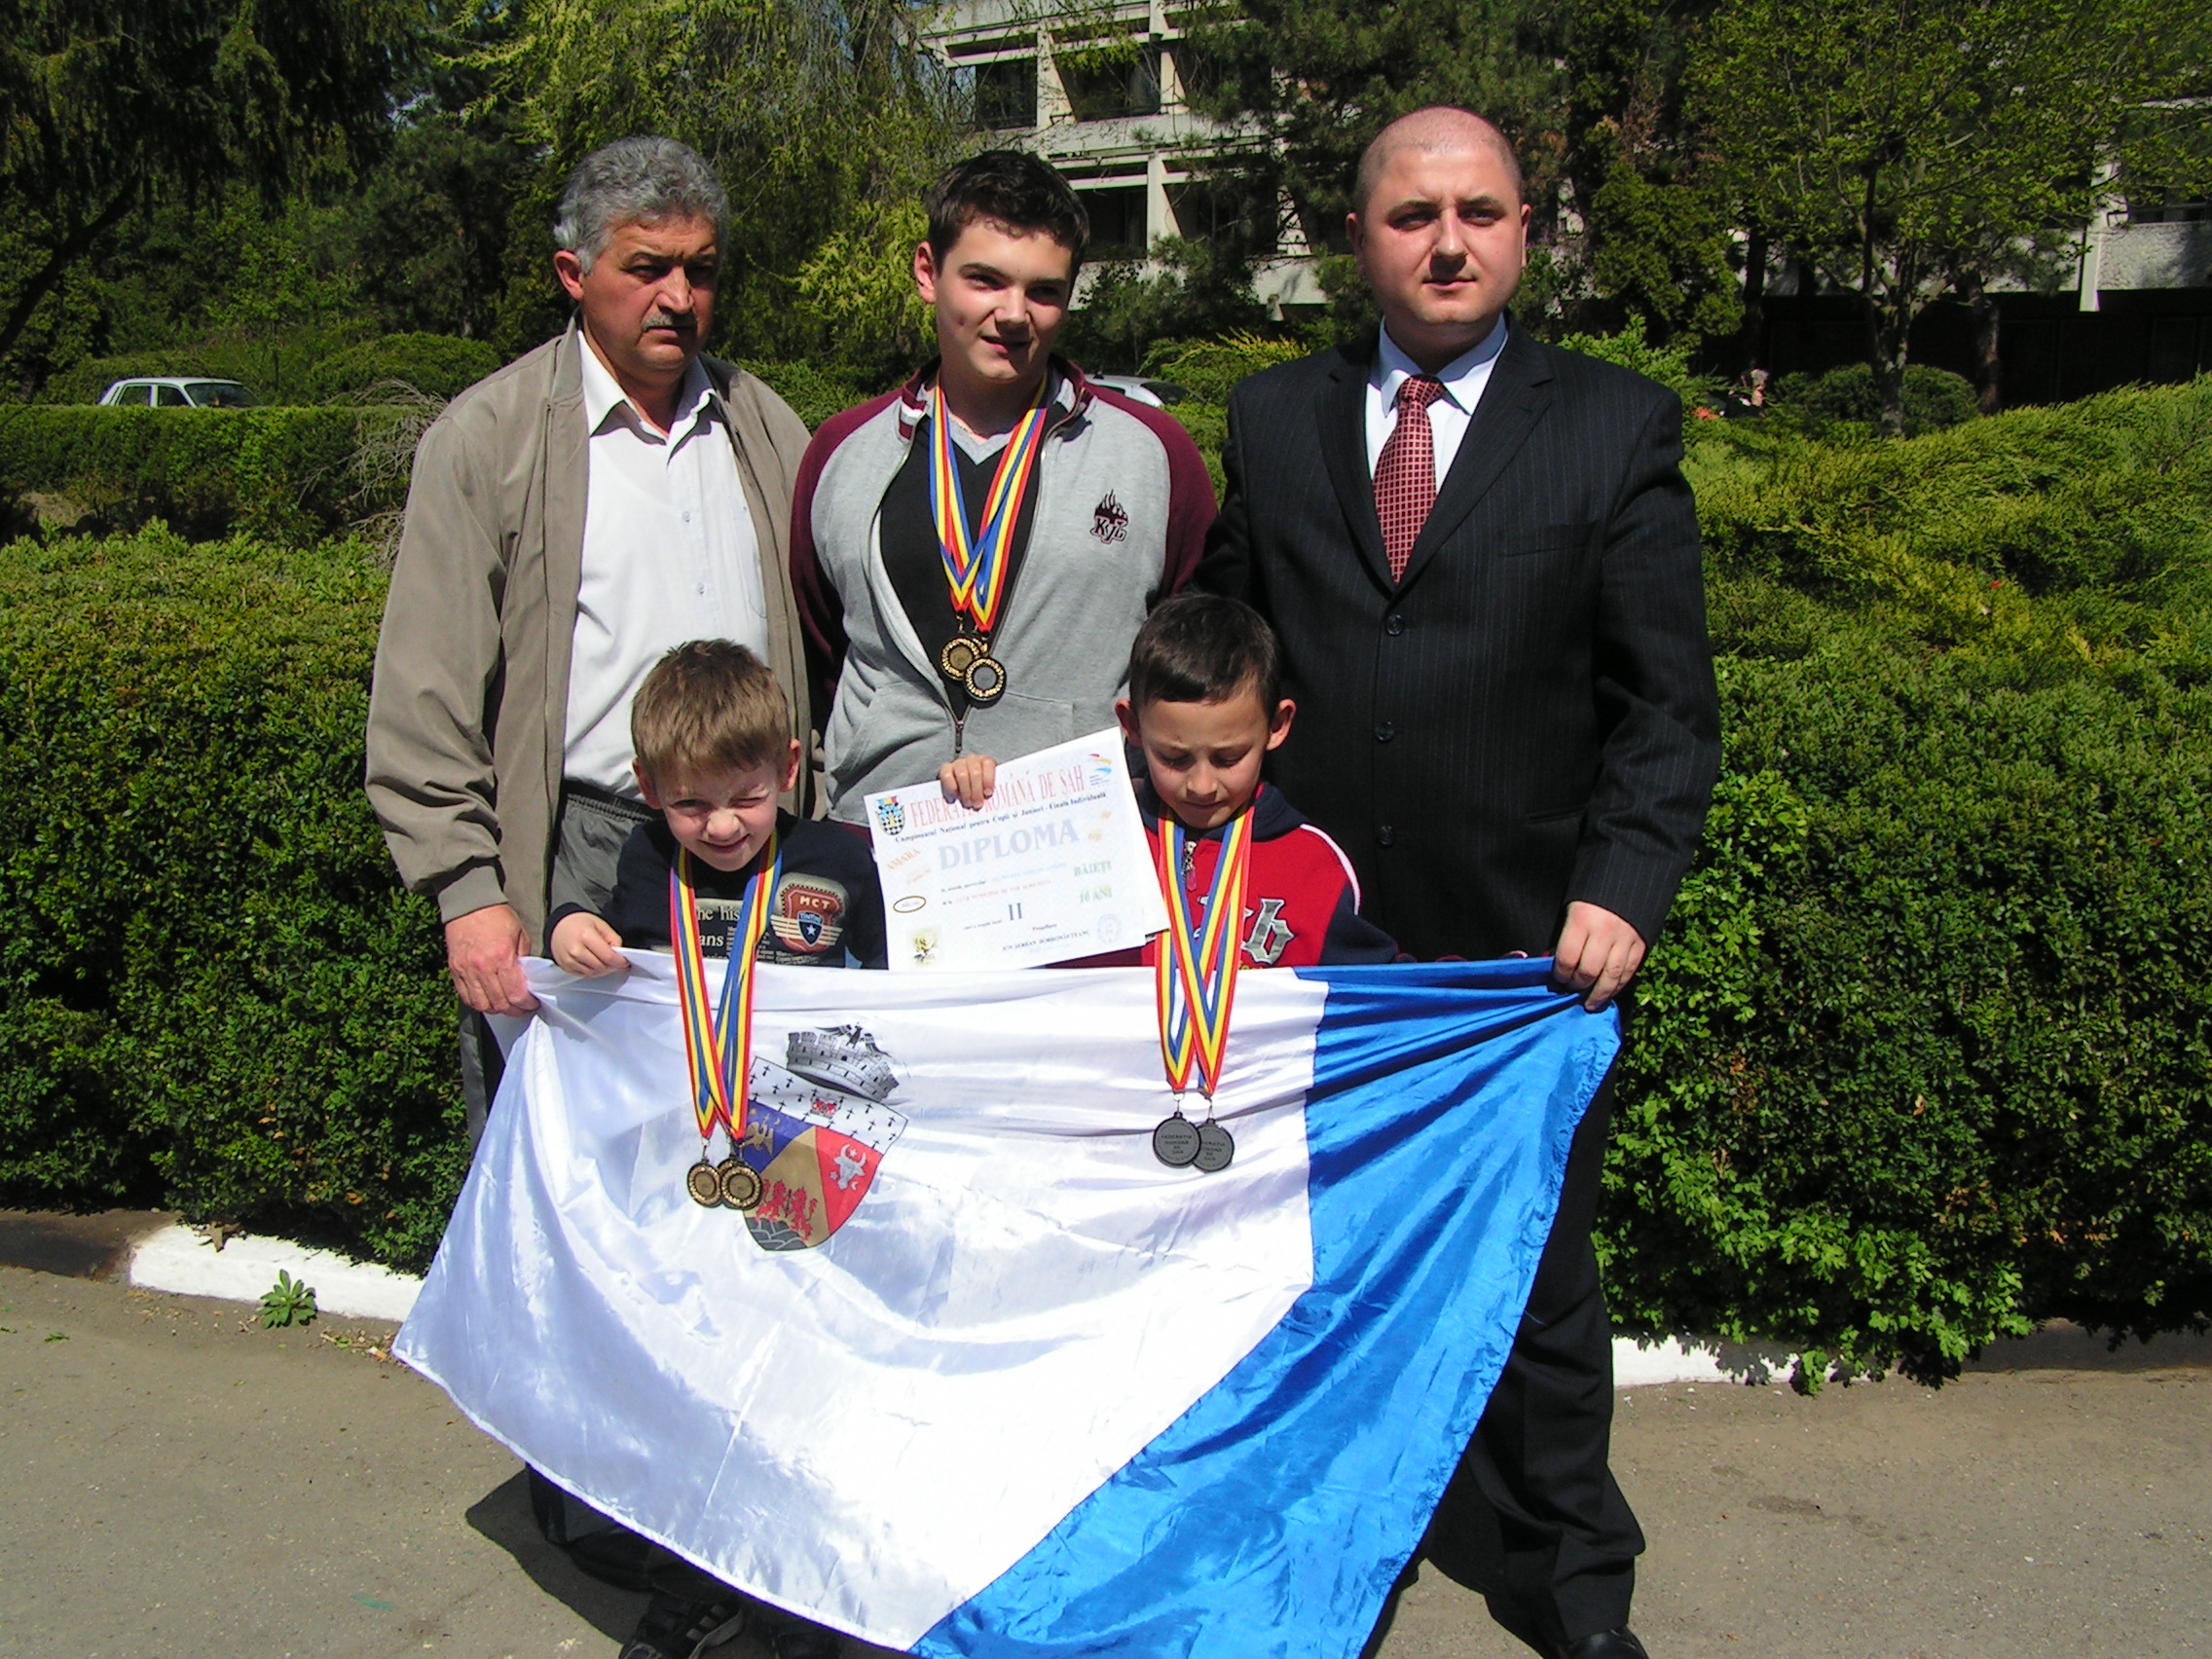 Medaliati  CN de juniori  Amara 2007